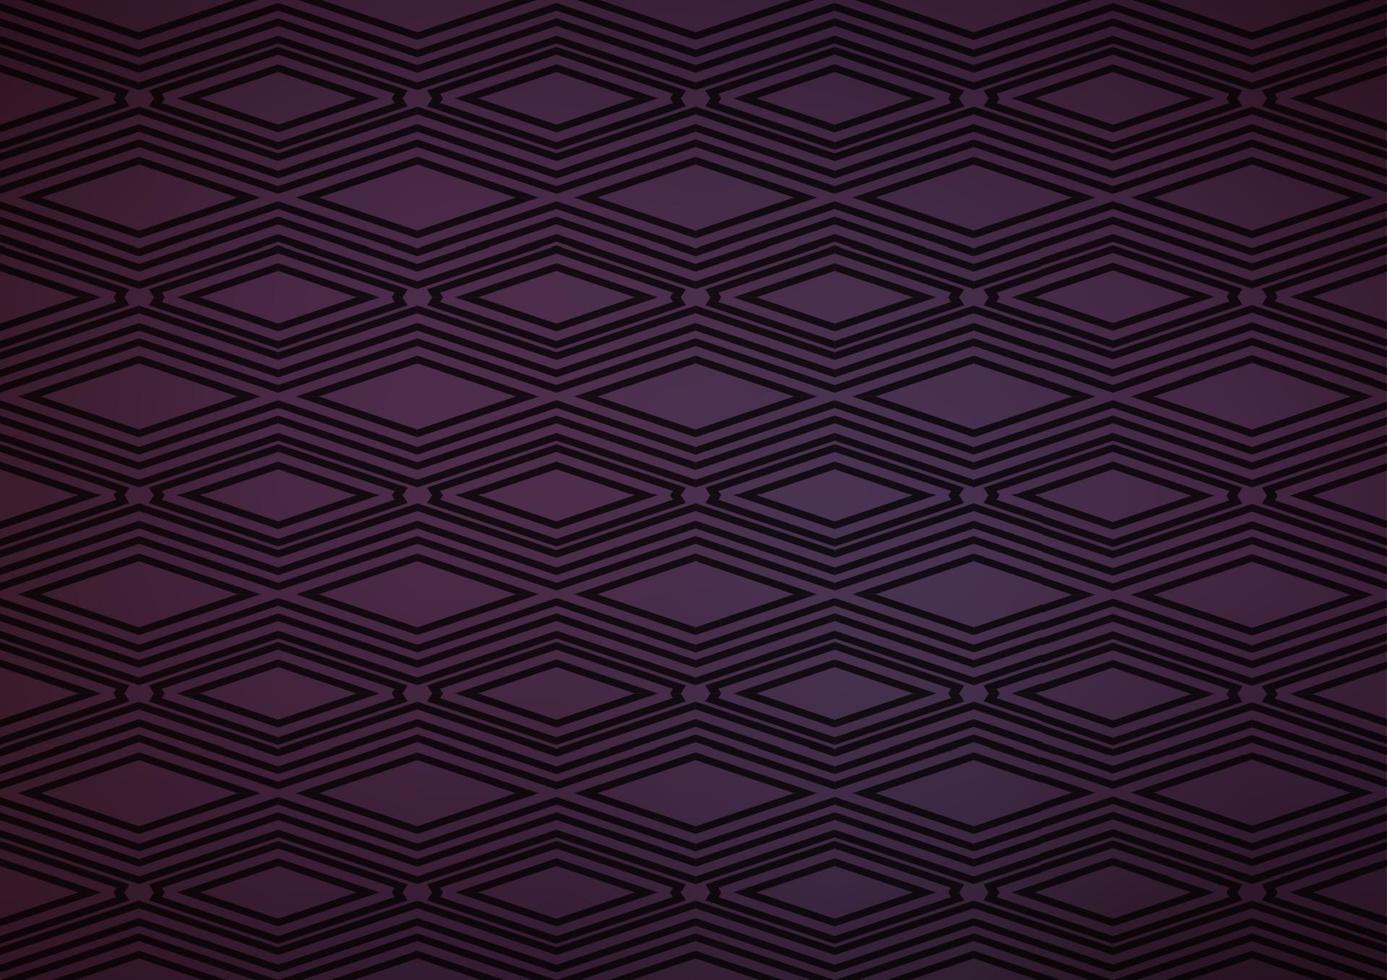 plantilla de vector púrpura oscuro con palos, cuadrados.